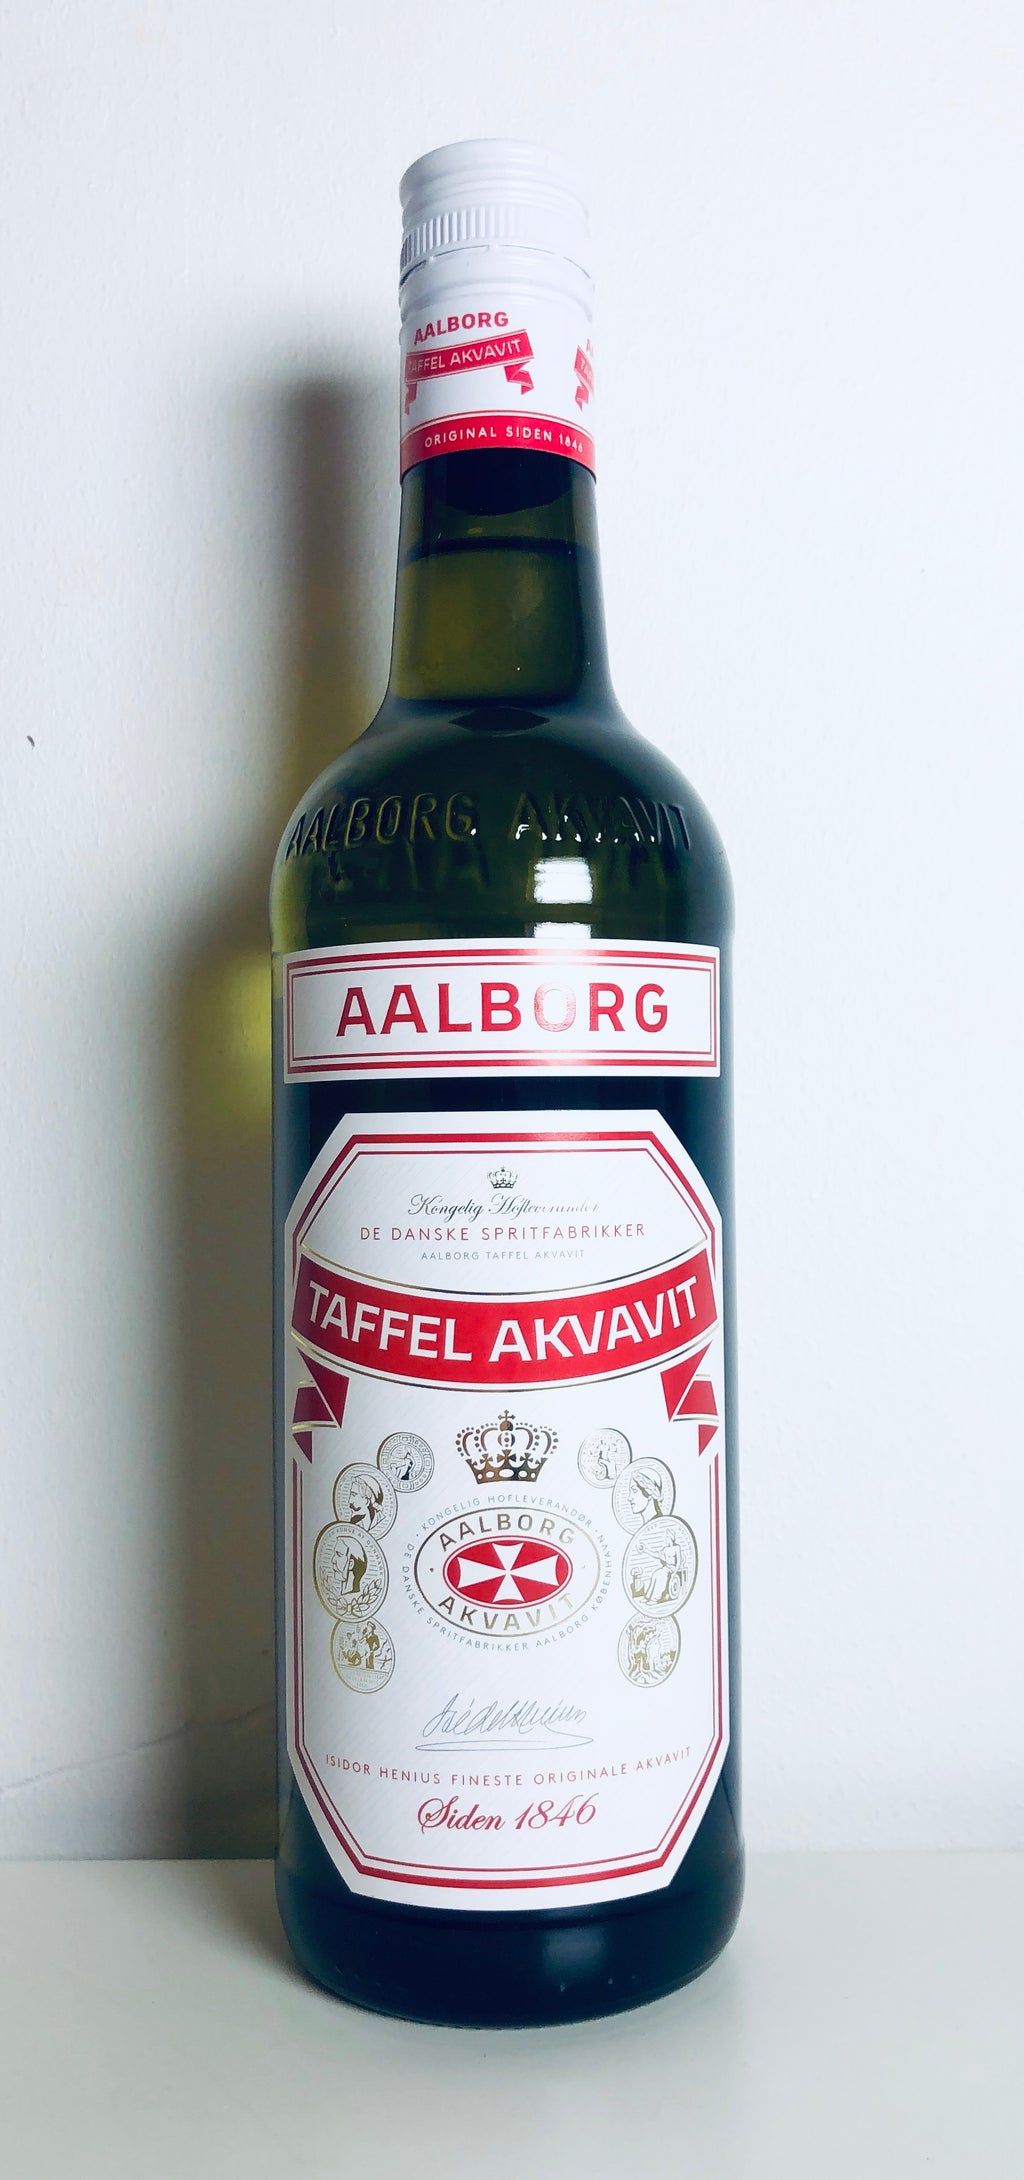 Aalborg Taffel Akvavit 45%, 70cl